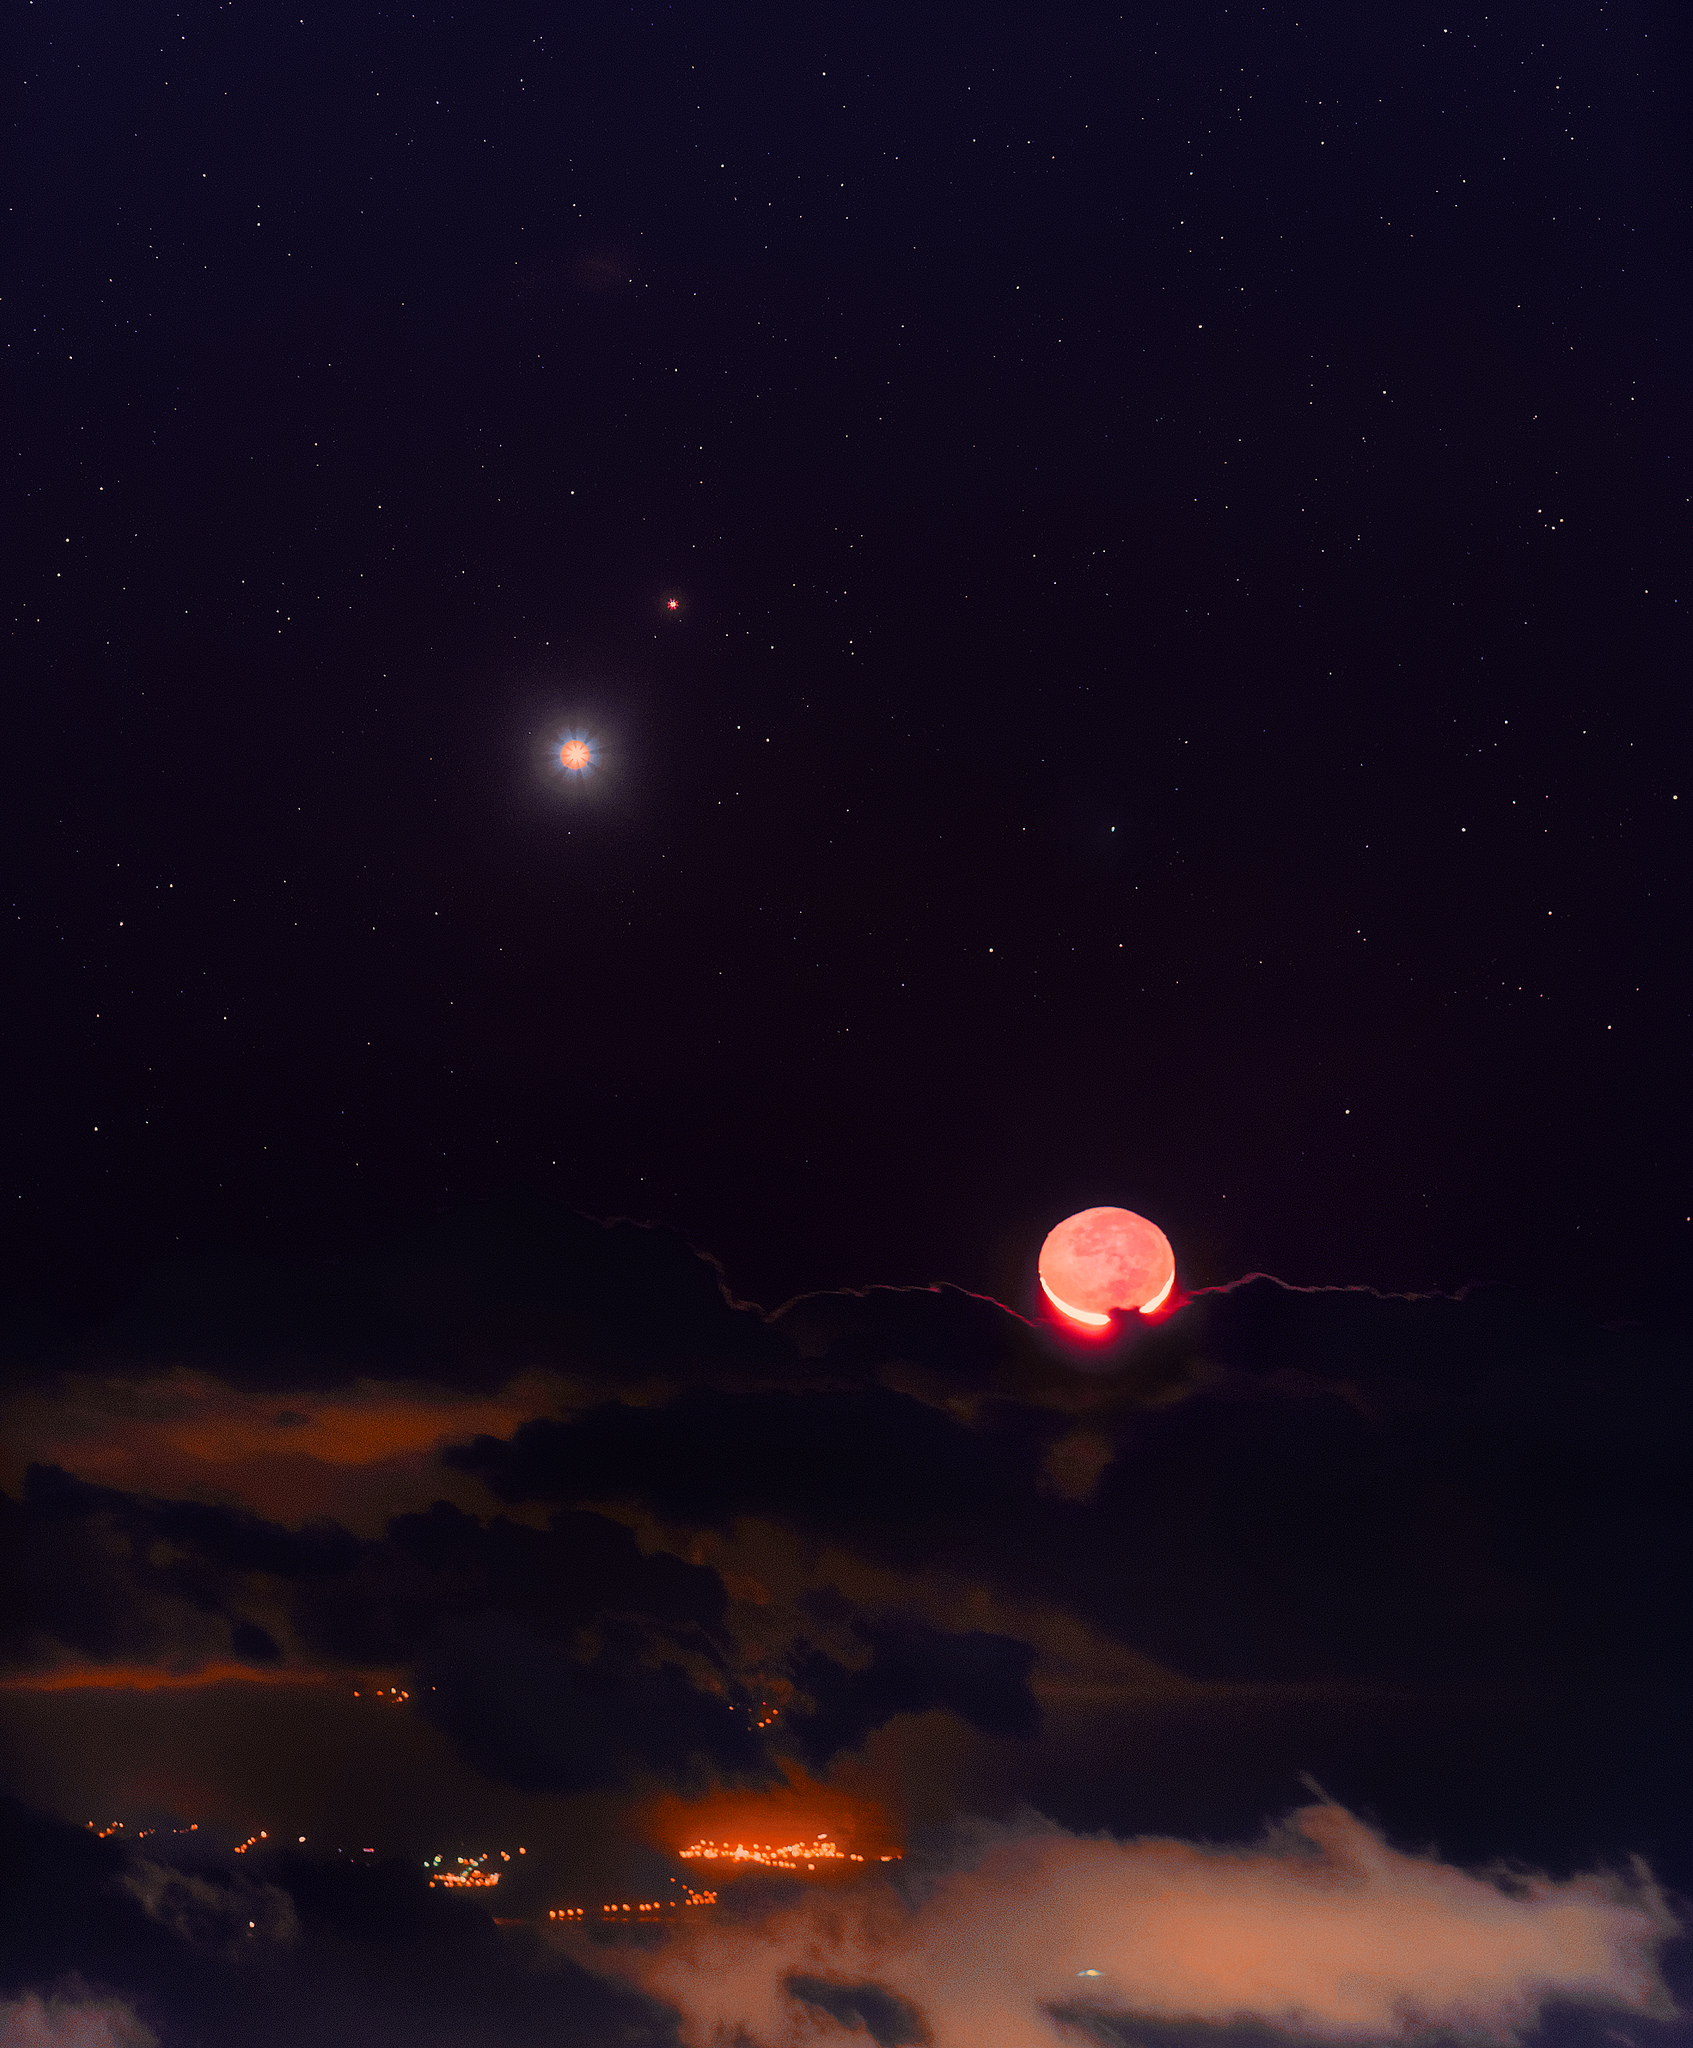 المشتري، وزحل، والمريخ، وعطارد يلتقيان القمر في سماء قطر خلال شهر مايو